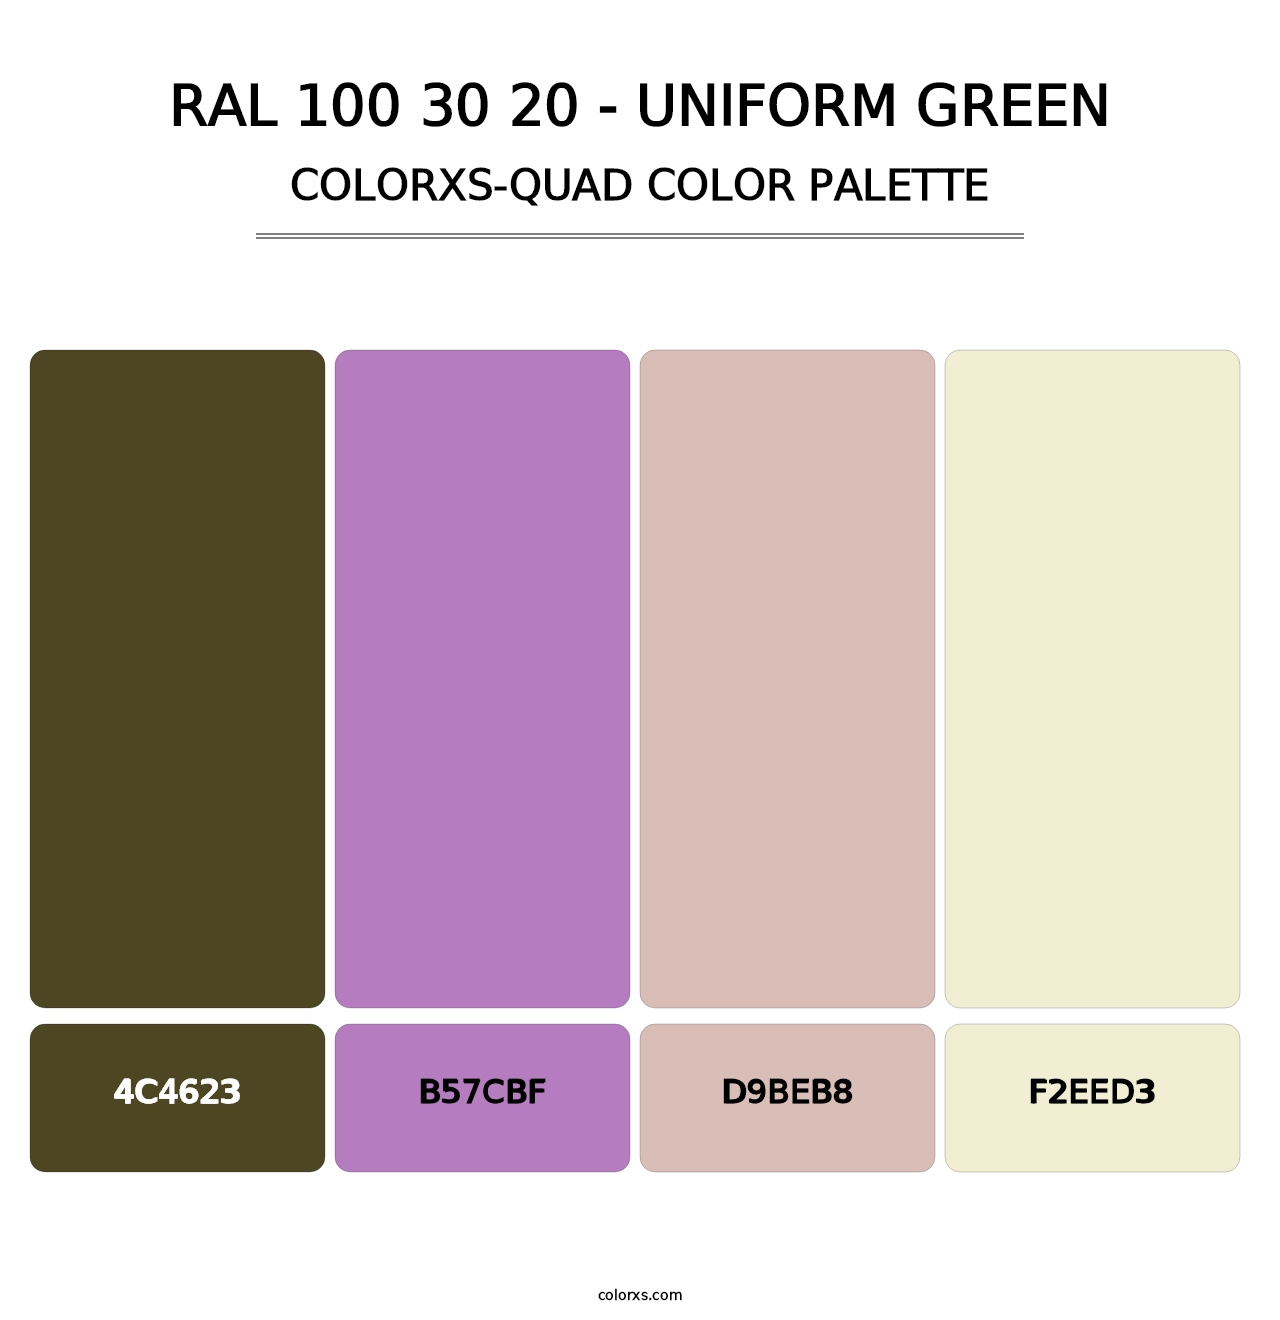 RAL 100 30 20 - Uniform Green - Colorxs Quad Palette